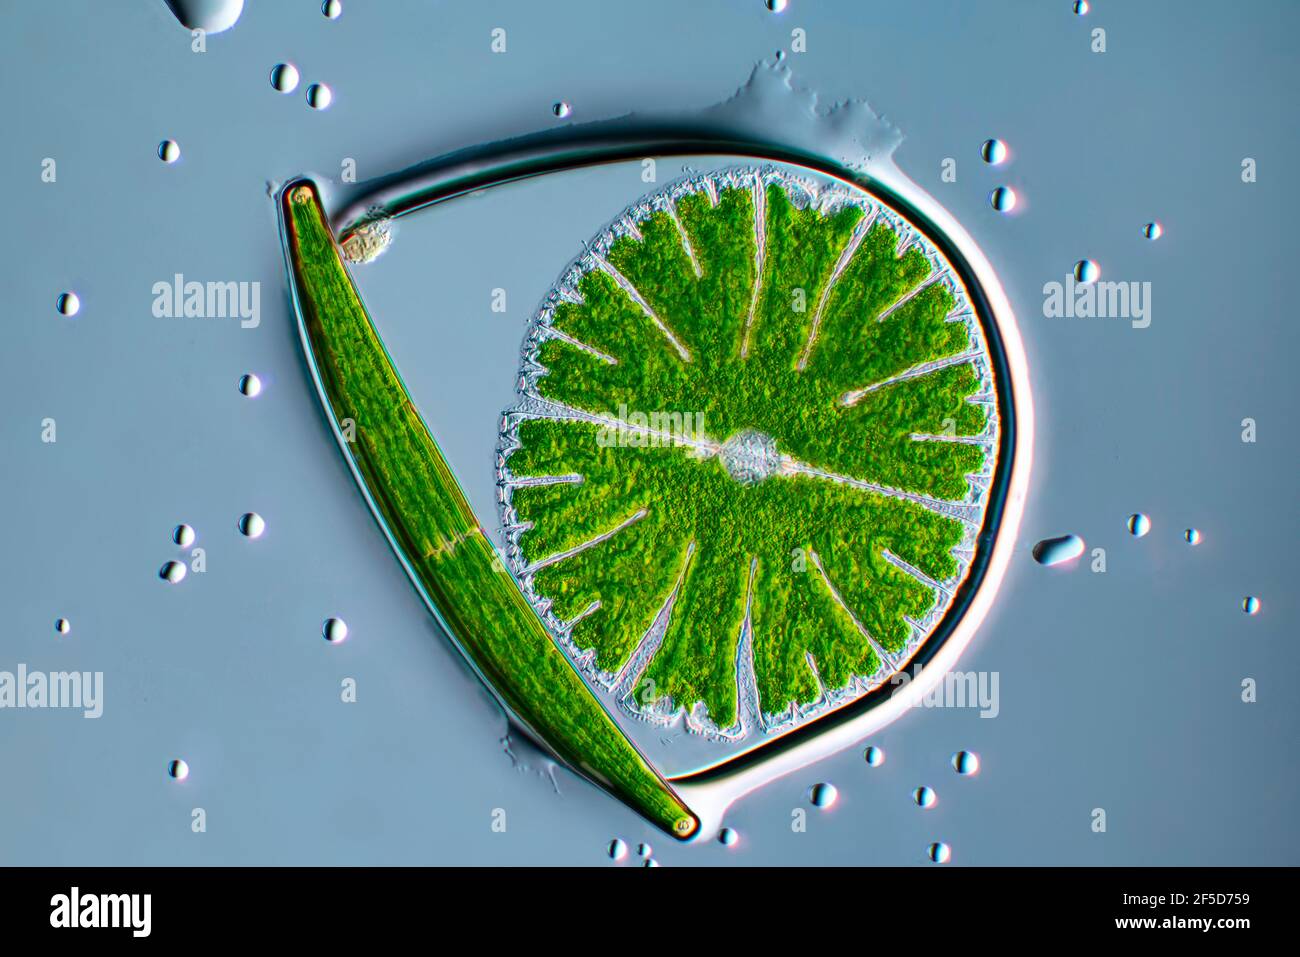 Algue verte (Micrasterias rotata), avec Clostridium dans une bulle d'eau, image microscopique de champ sombre, grossissement x100 par rapport à 35 mm, Allemagne Banque D'Images